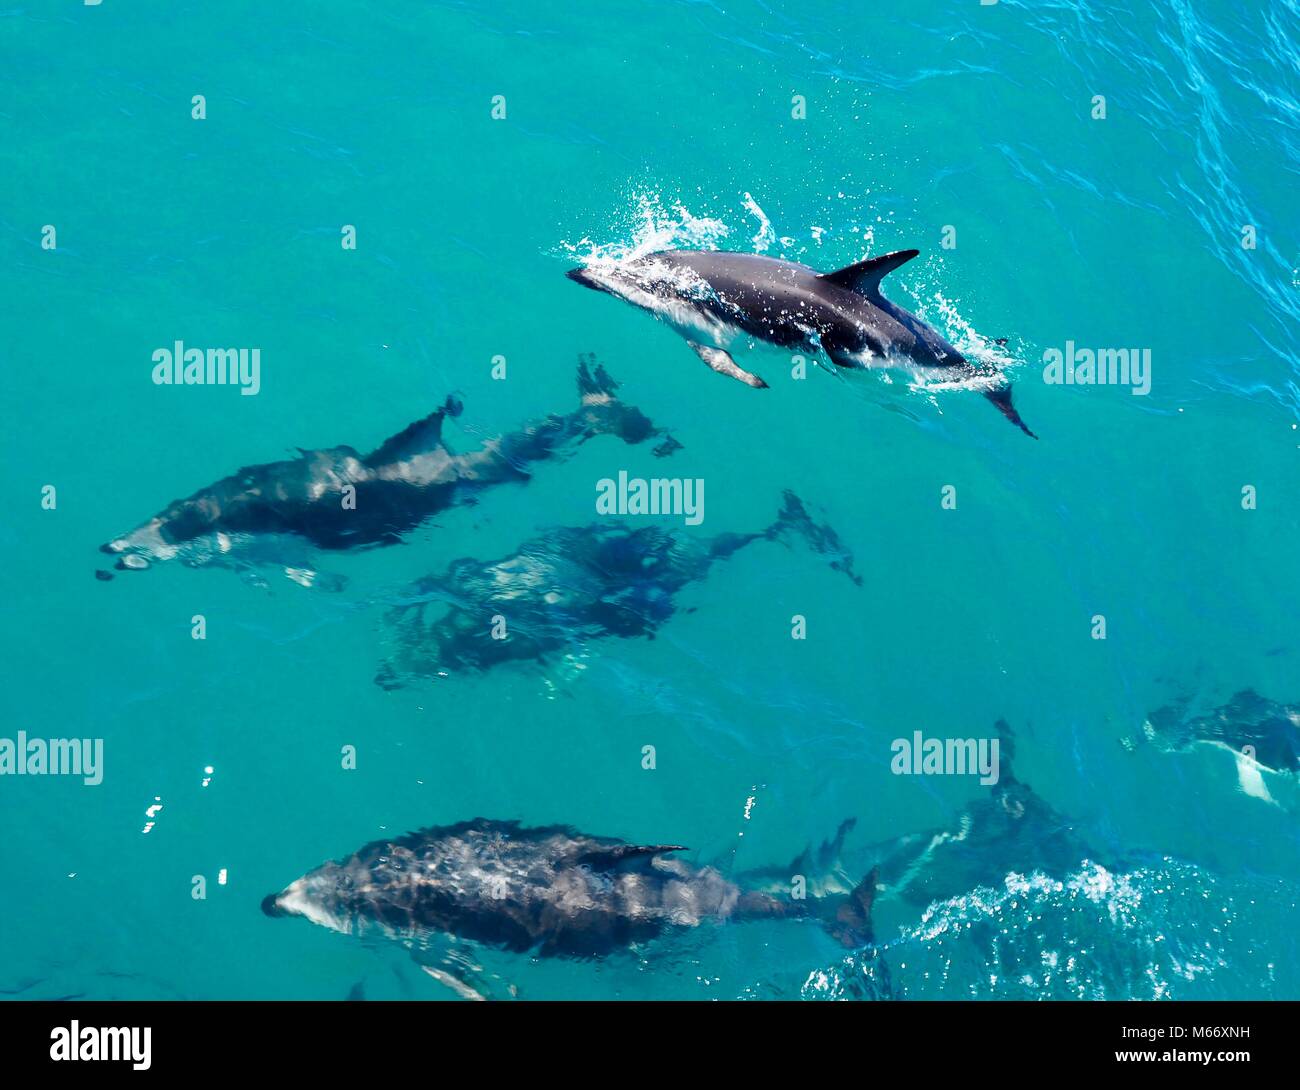 Nuotare in un pod di cinque centinaia di delfini presso la costa di Kaikoura in Nuova Zelanda. Bella creatura che ha avuto così tanto divertimento saltando intorno alla barca. Foto Stock